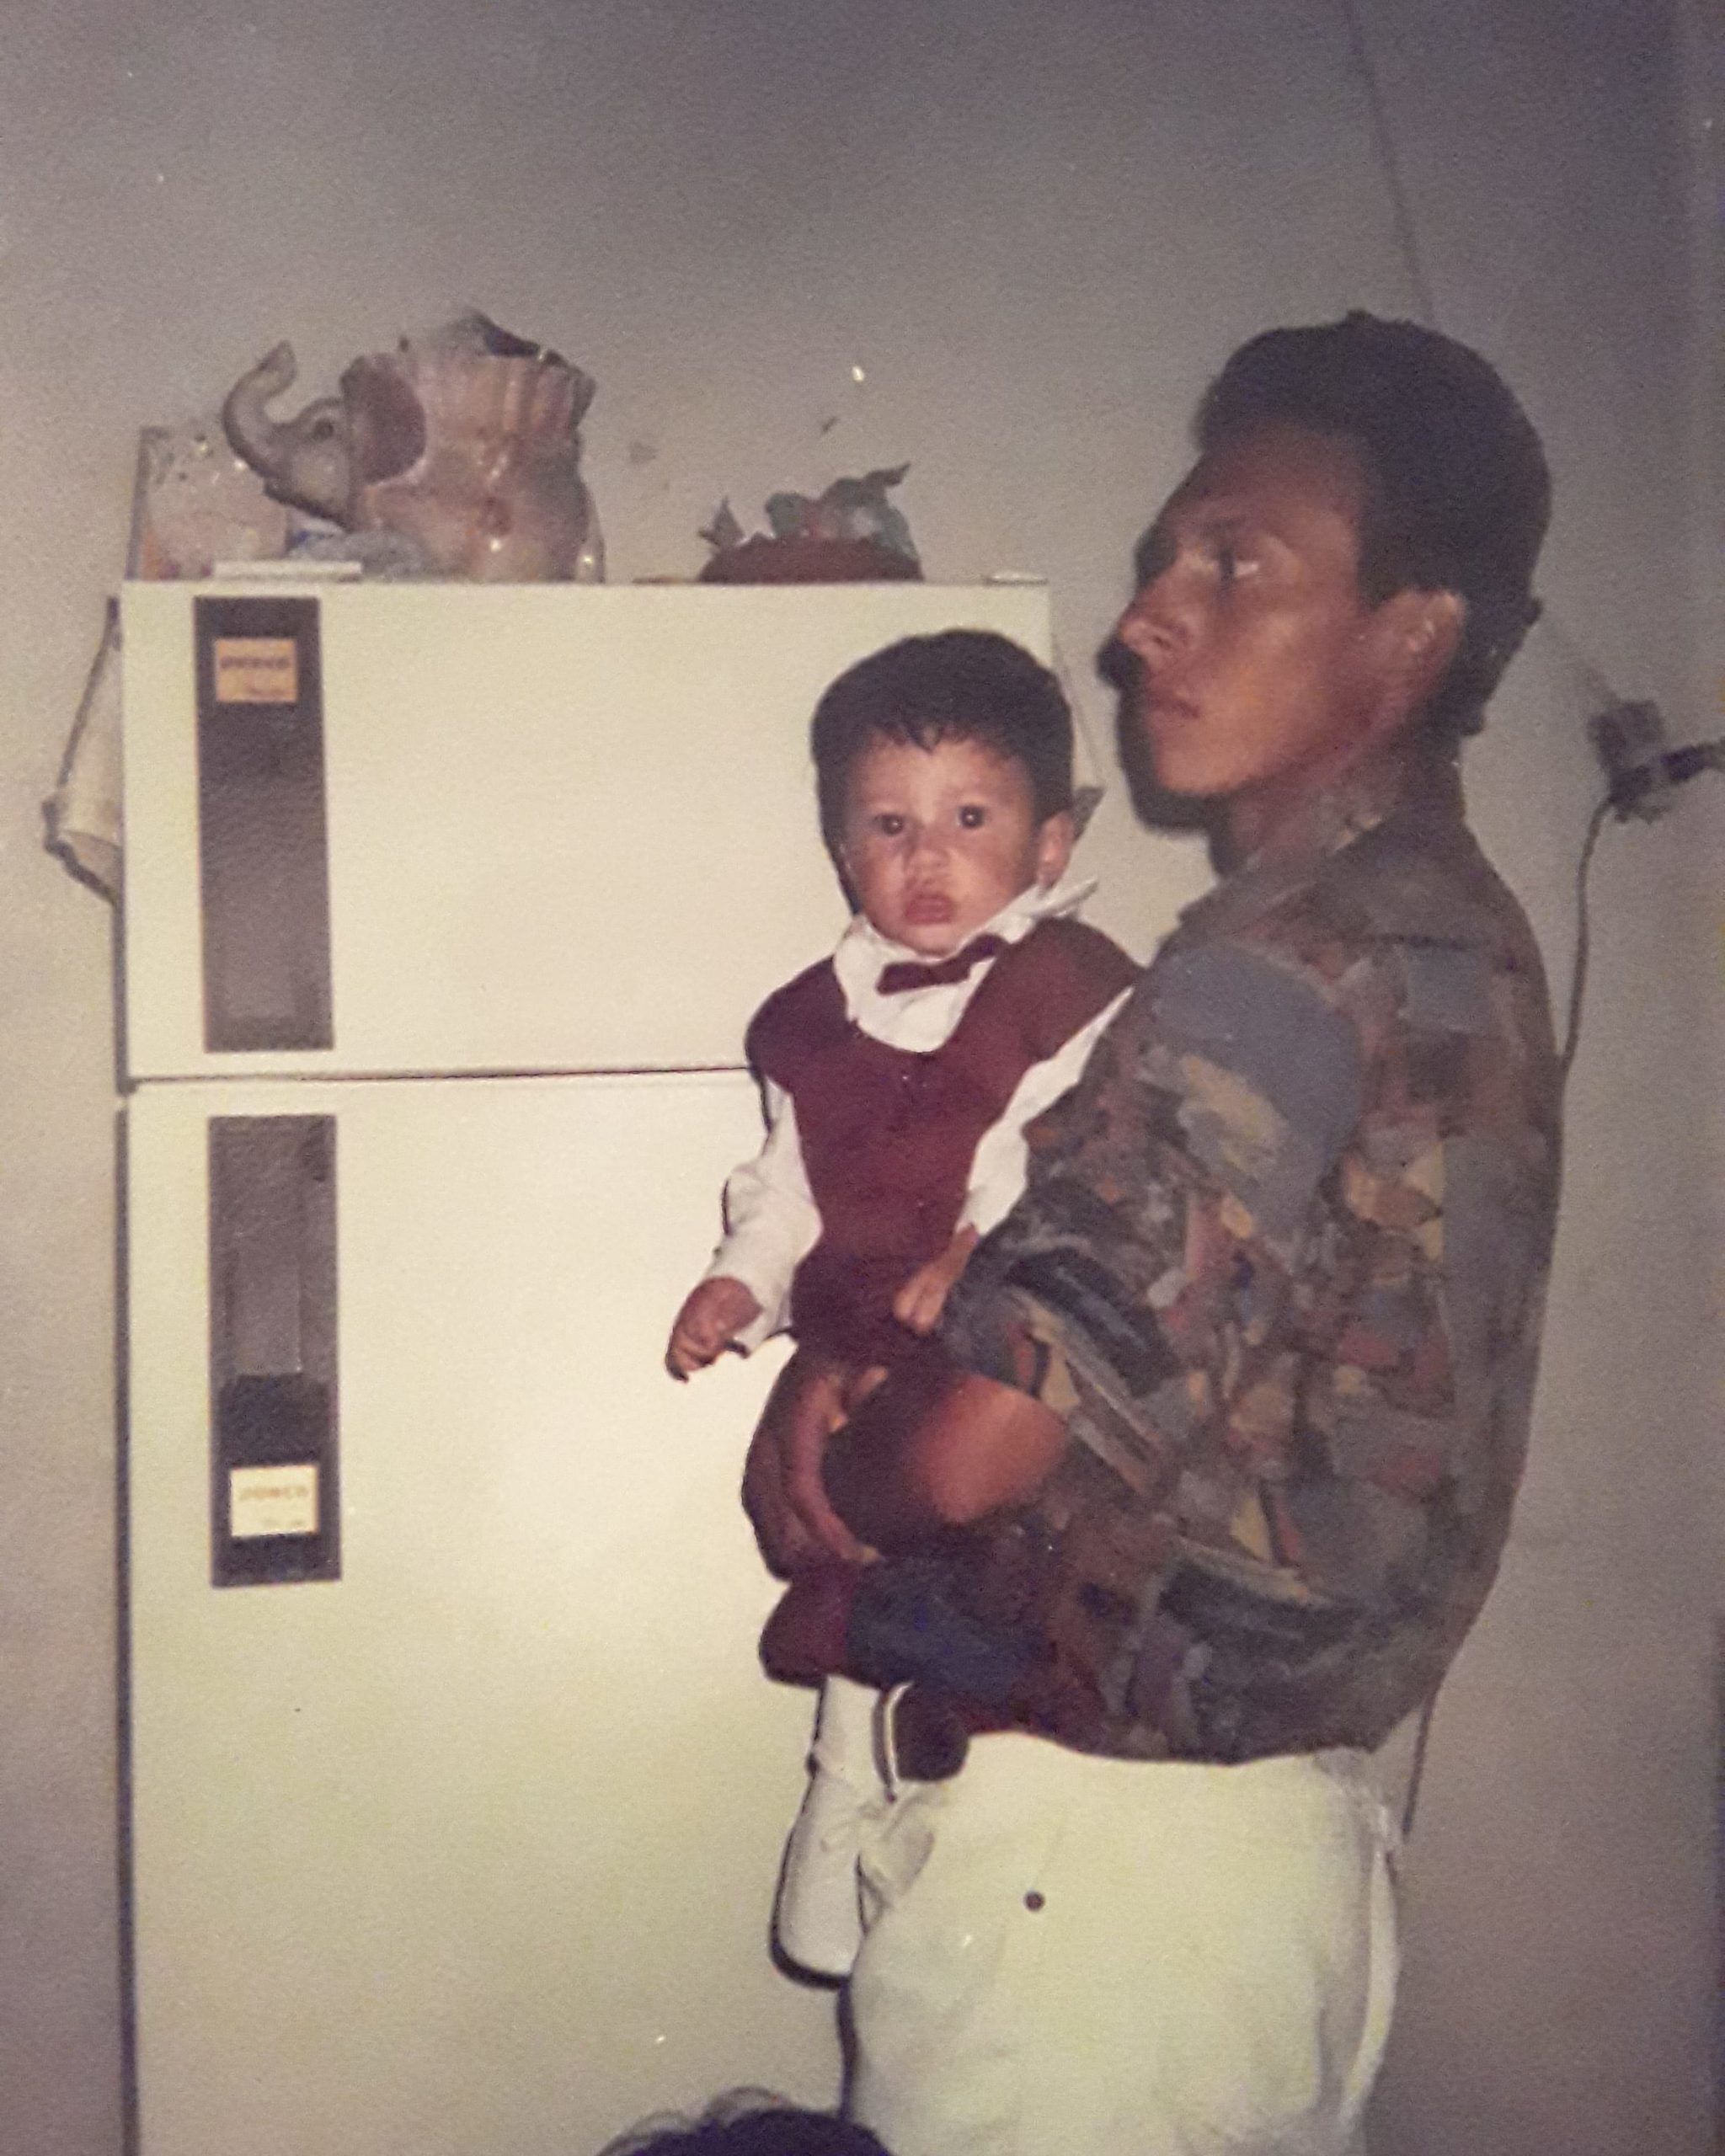 Desapareció hace 23 años: “Ayúdame a buscar a mi padre” - Porlavisión